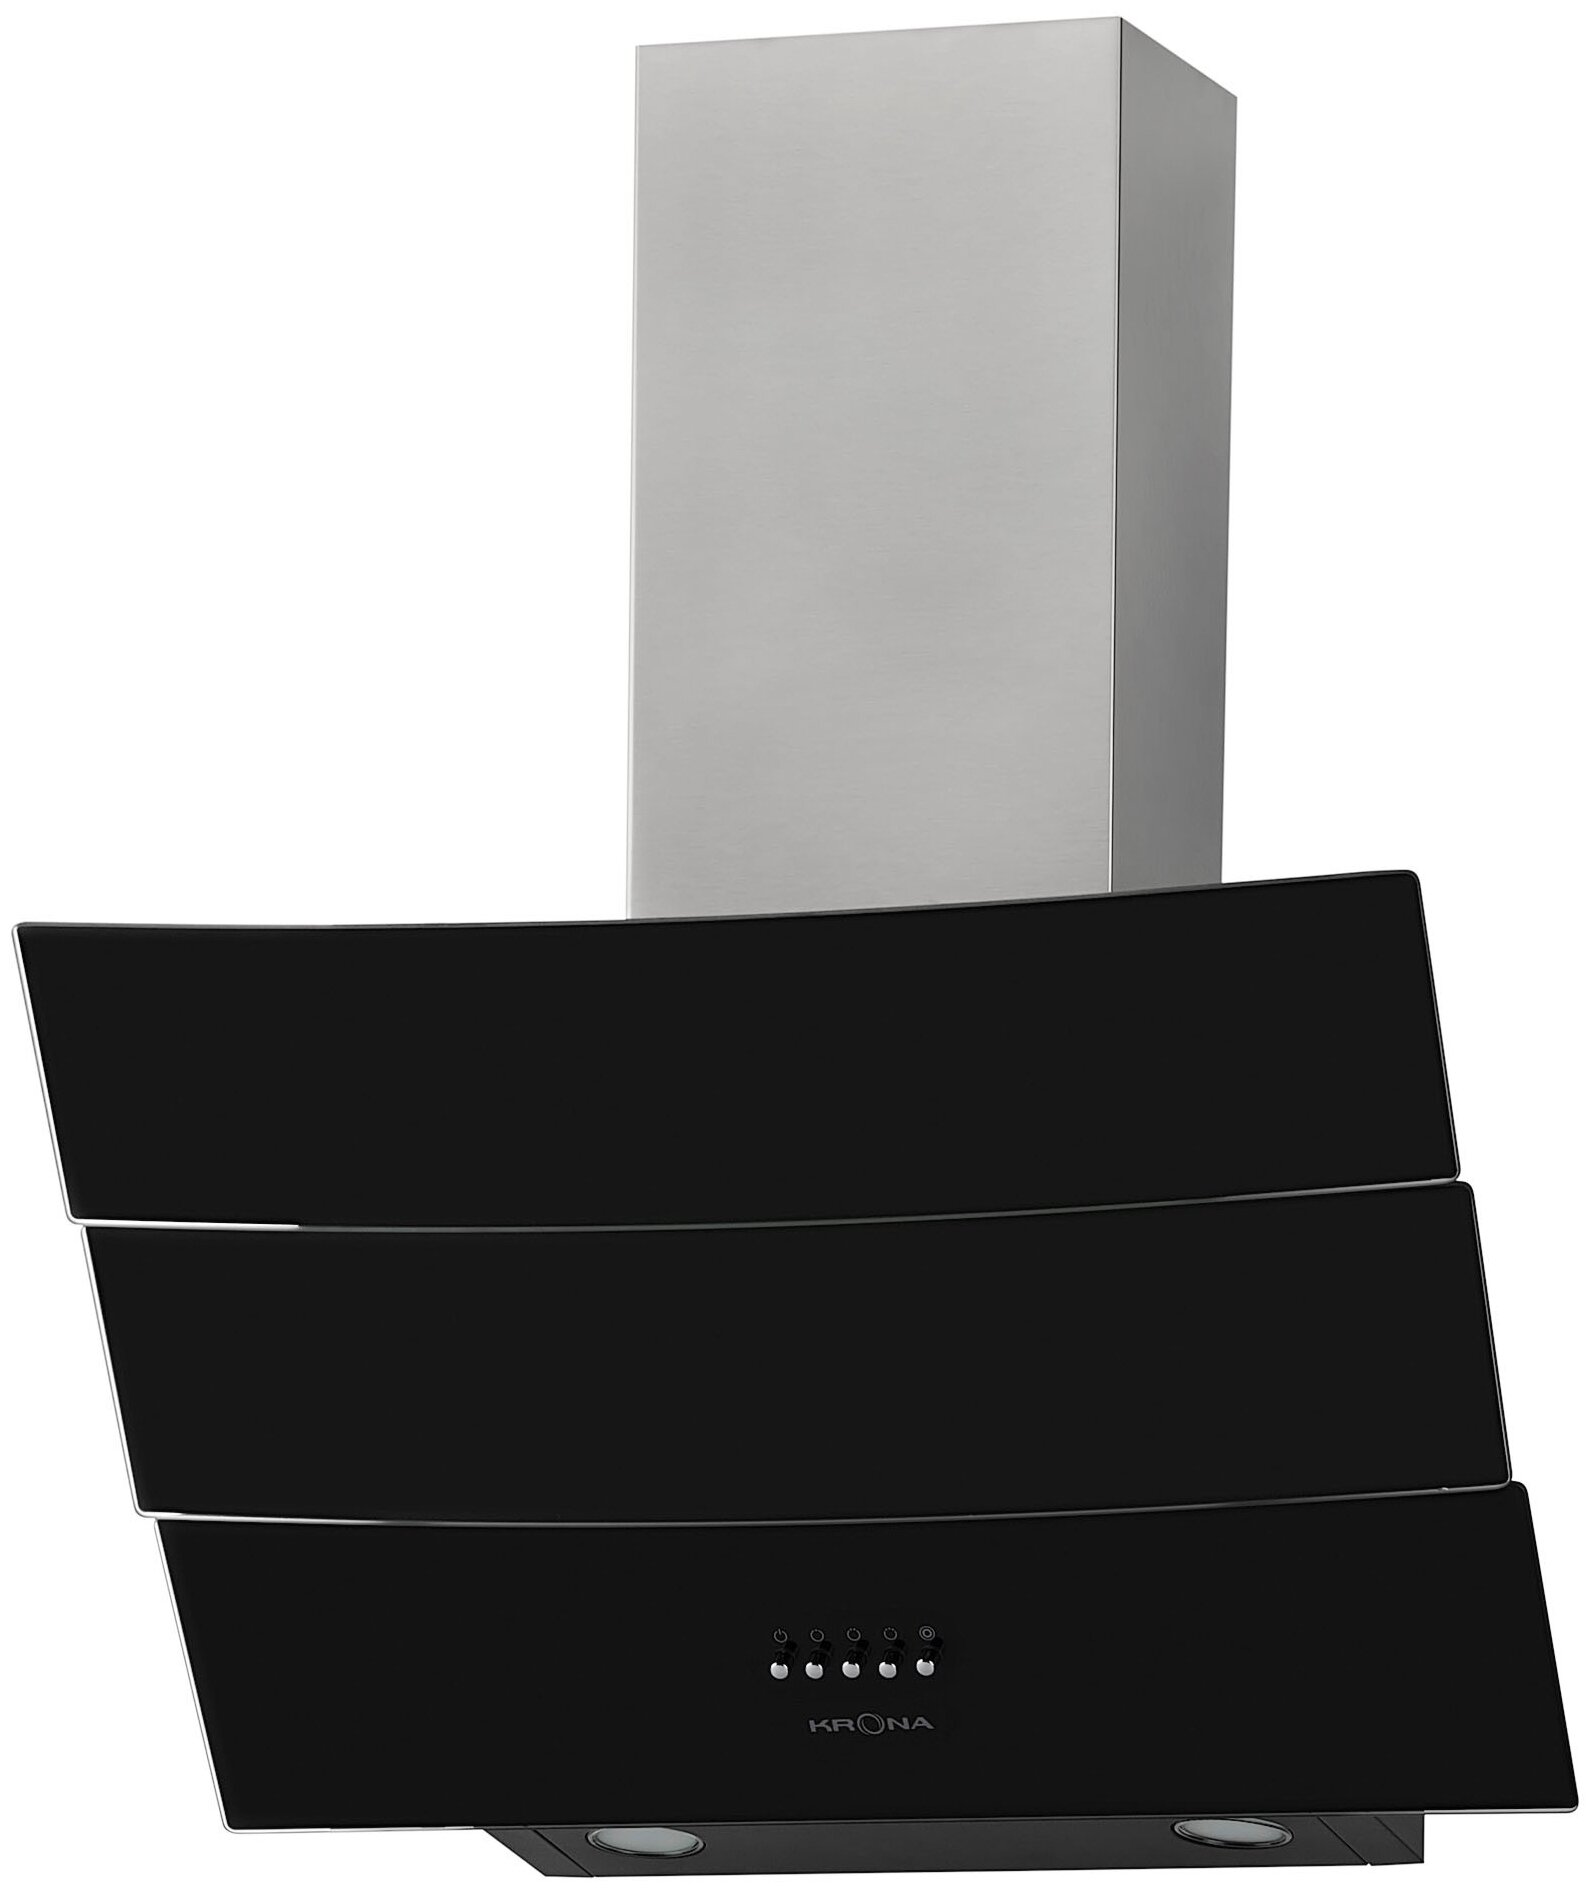 Наклонная вытяжка Krona Inga PB 600, цвет корпуса inox/black, цвет окантовки/панели черный